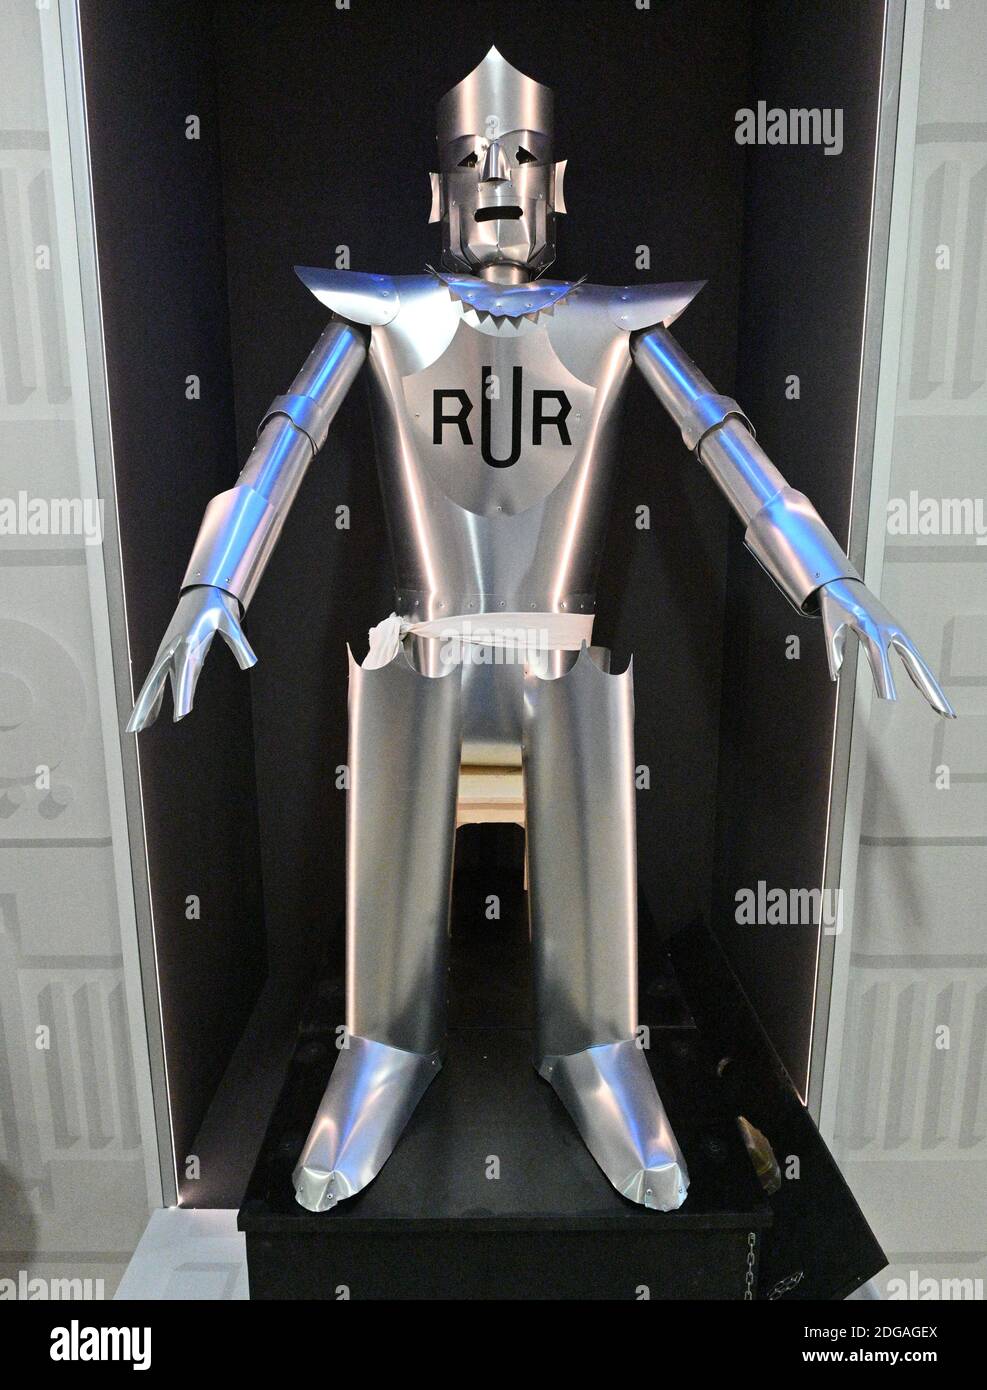 Le premier robot britannique avec les lettres R.U.R. inspiré par la pièce  de Karel Capek, qui a été présenté à Londres en 1923, à l'exposition  Robot2020 au Musée technique de Brno, République